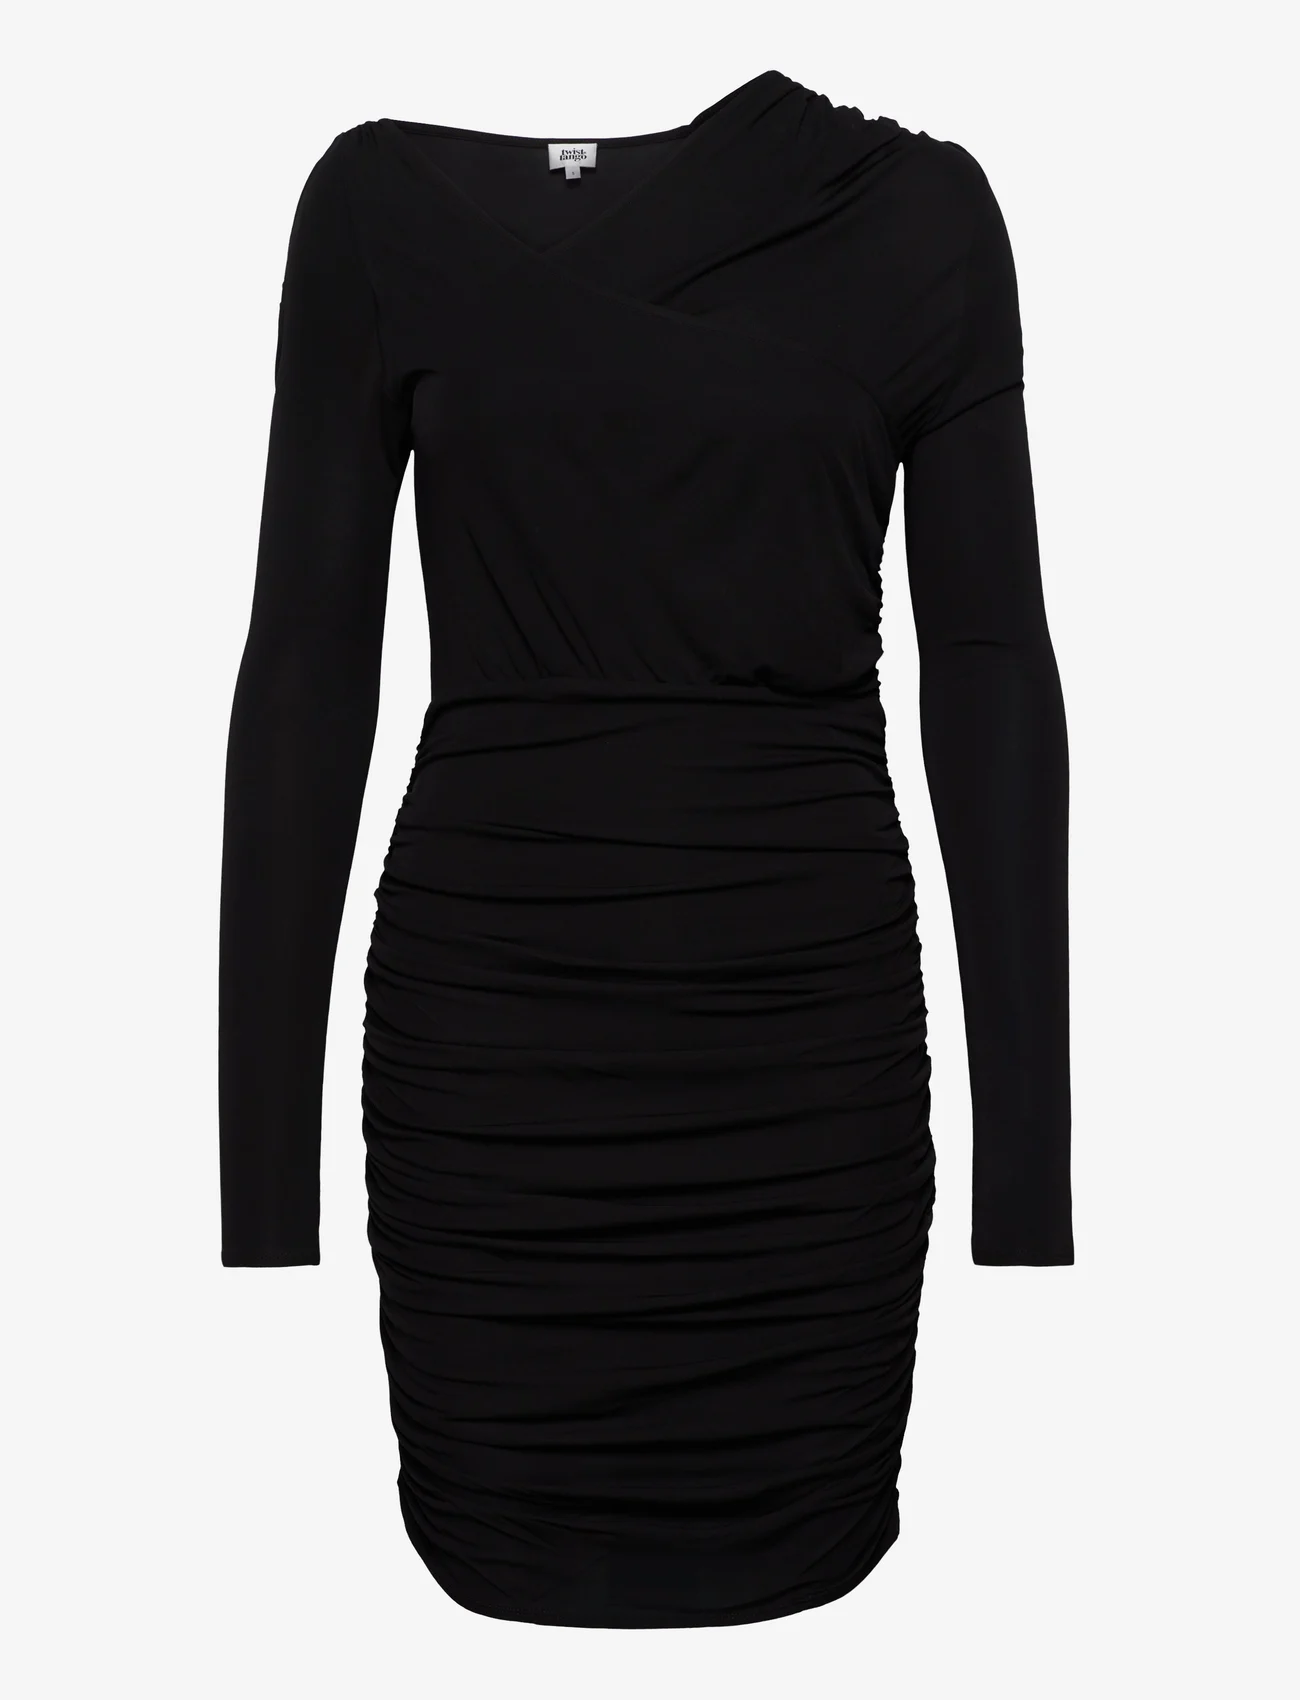 Twist & Tango - Paget Dress - feestelijke kleding voor outlet-prijzen - black - 0